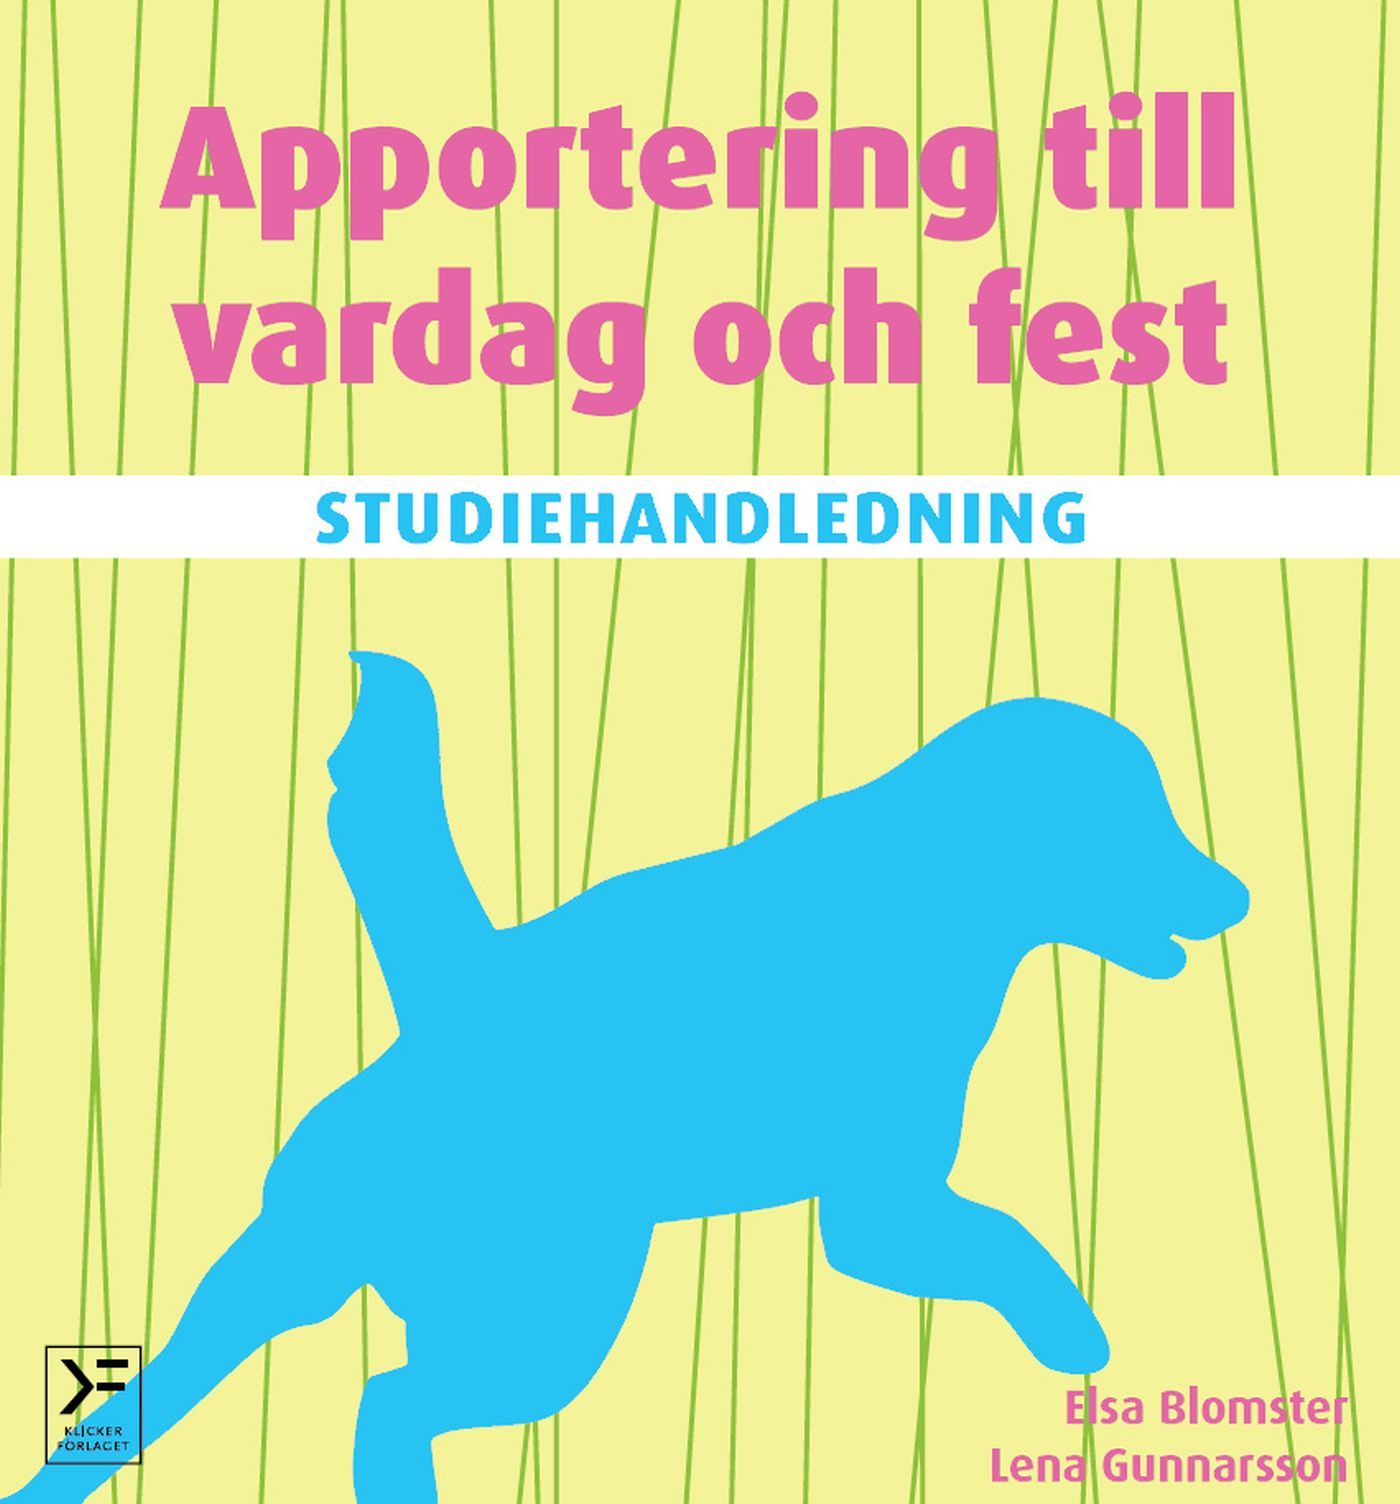 Studiehandledning Apportering till vardag och fest, e-bog af Elsa Blomster, Lena Gunnarsson